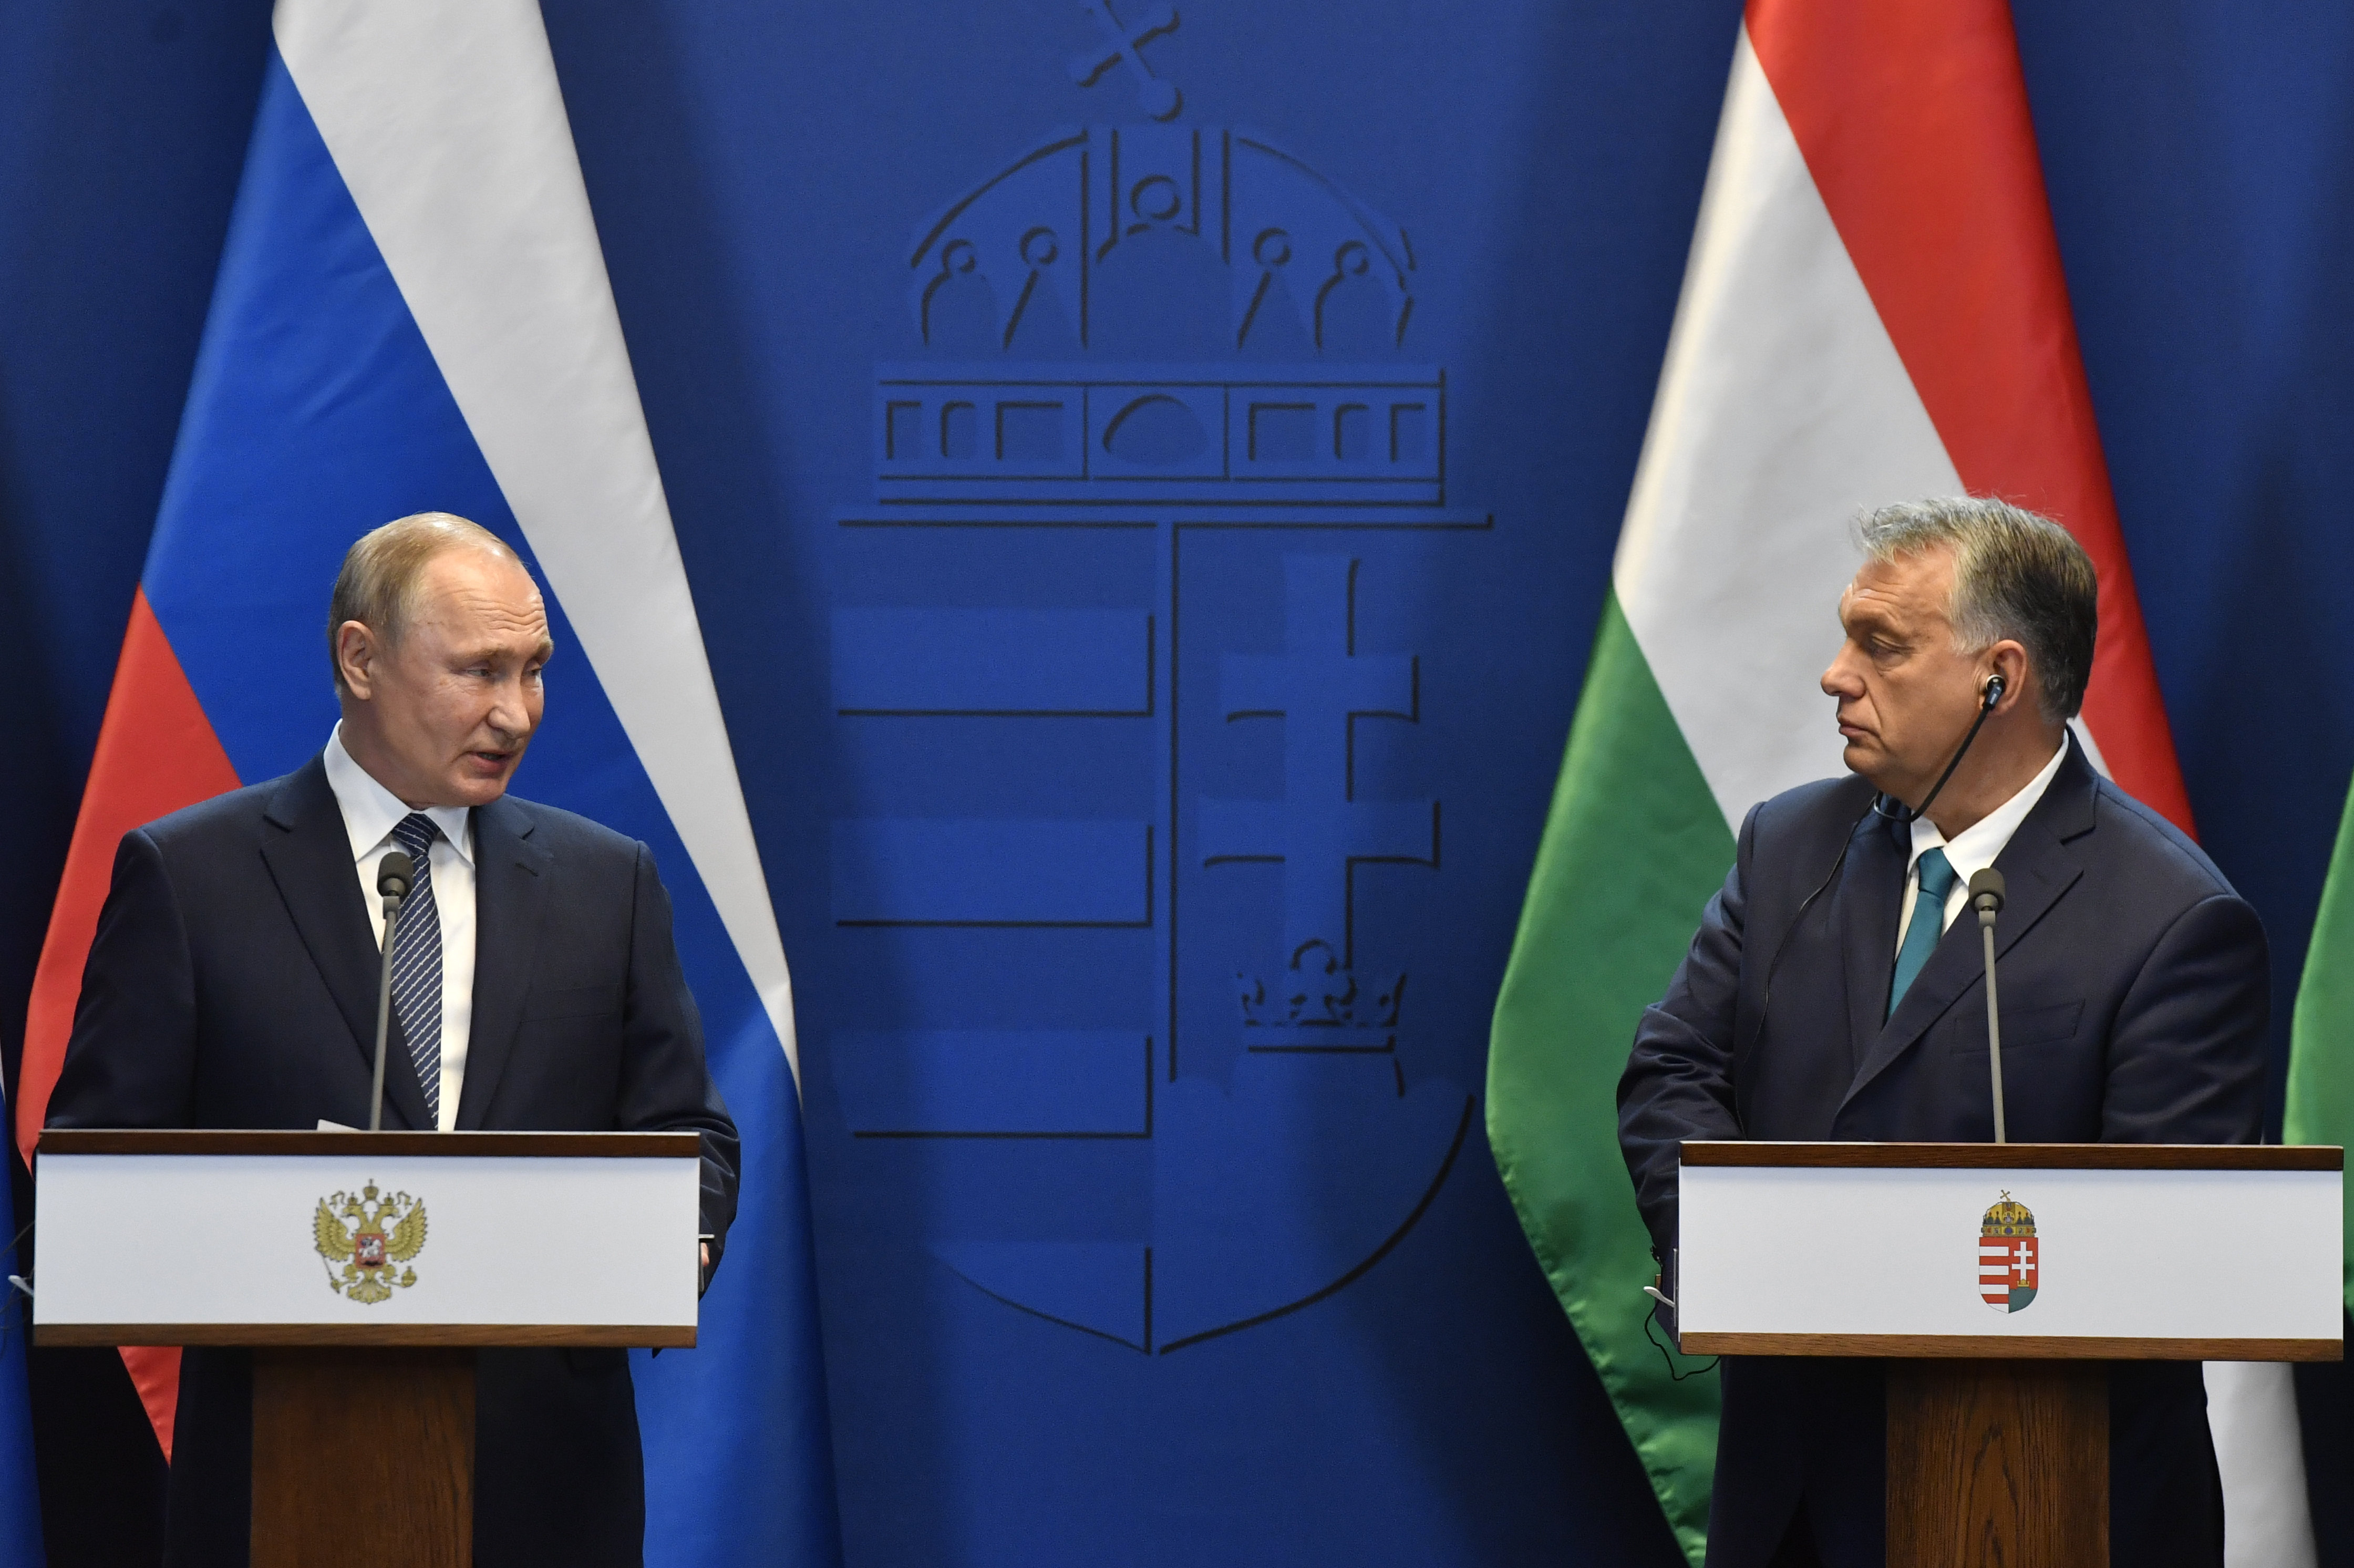 Putin gratuliert Orbán zu seinem Wahlsieg